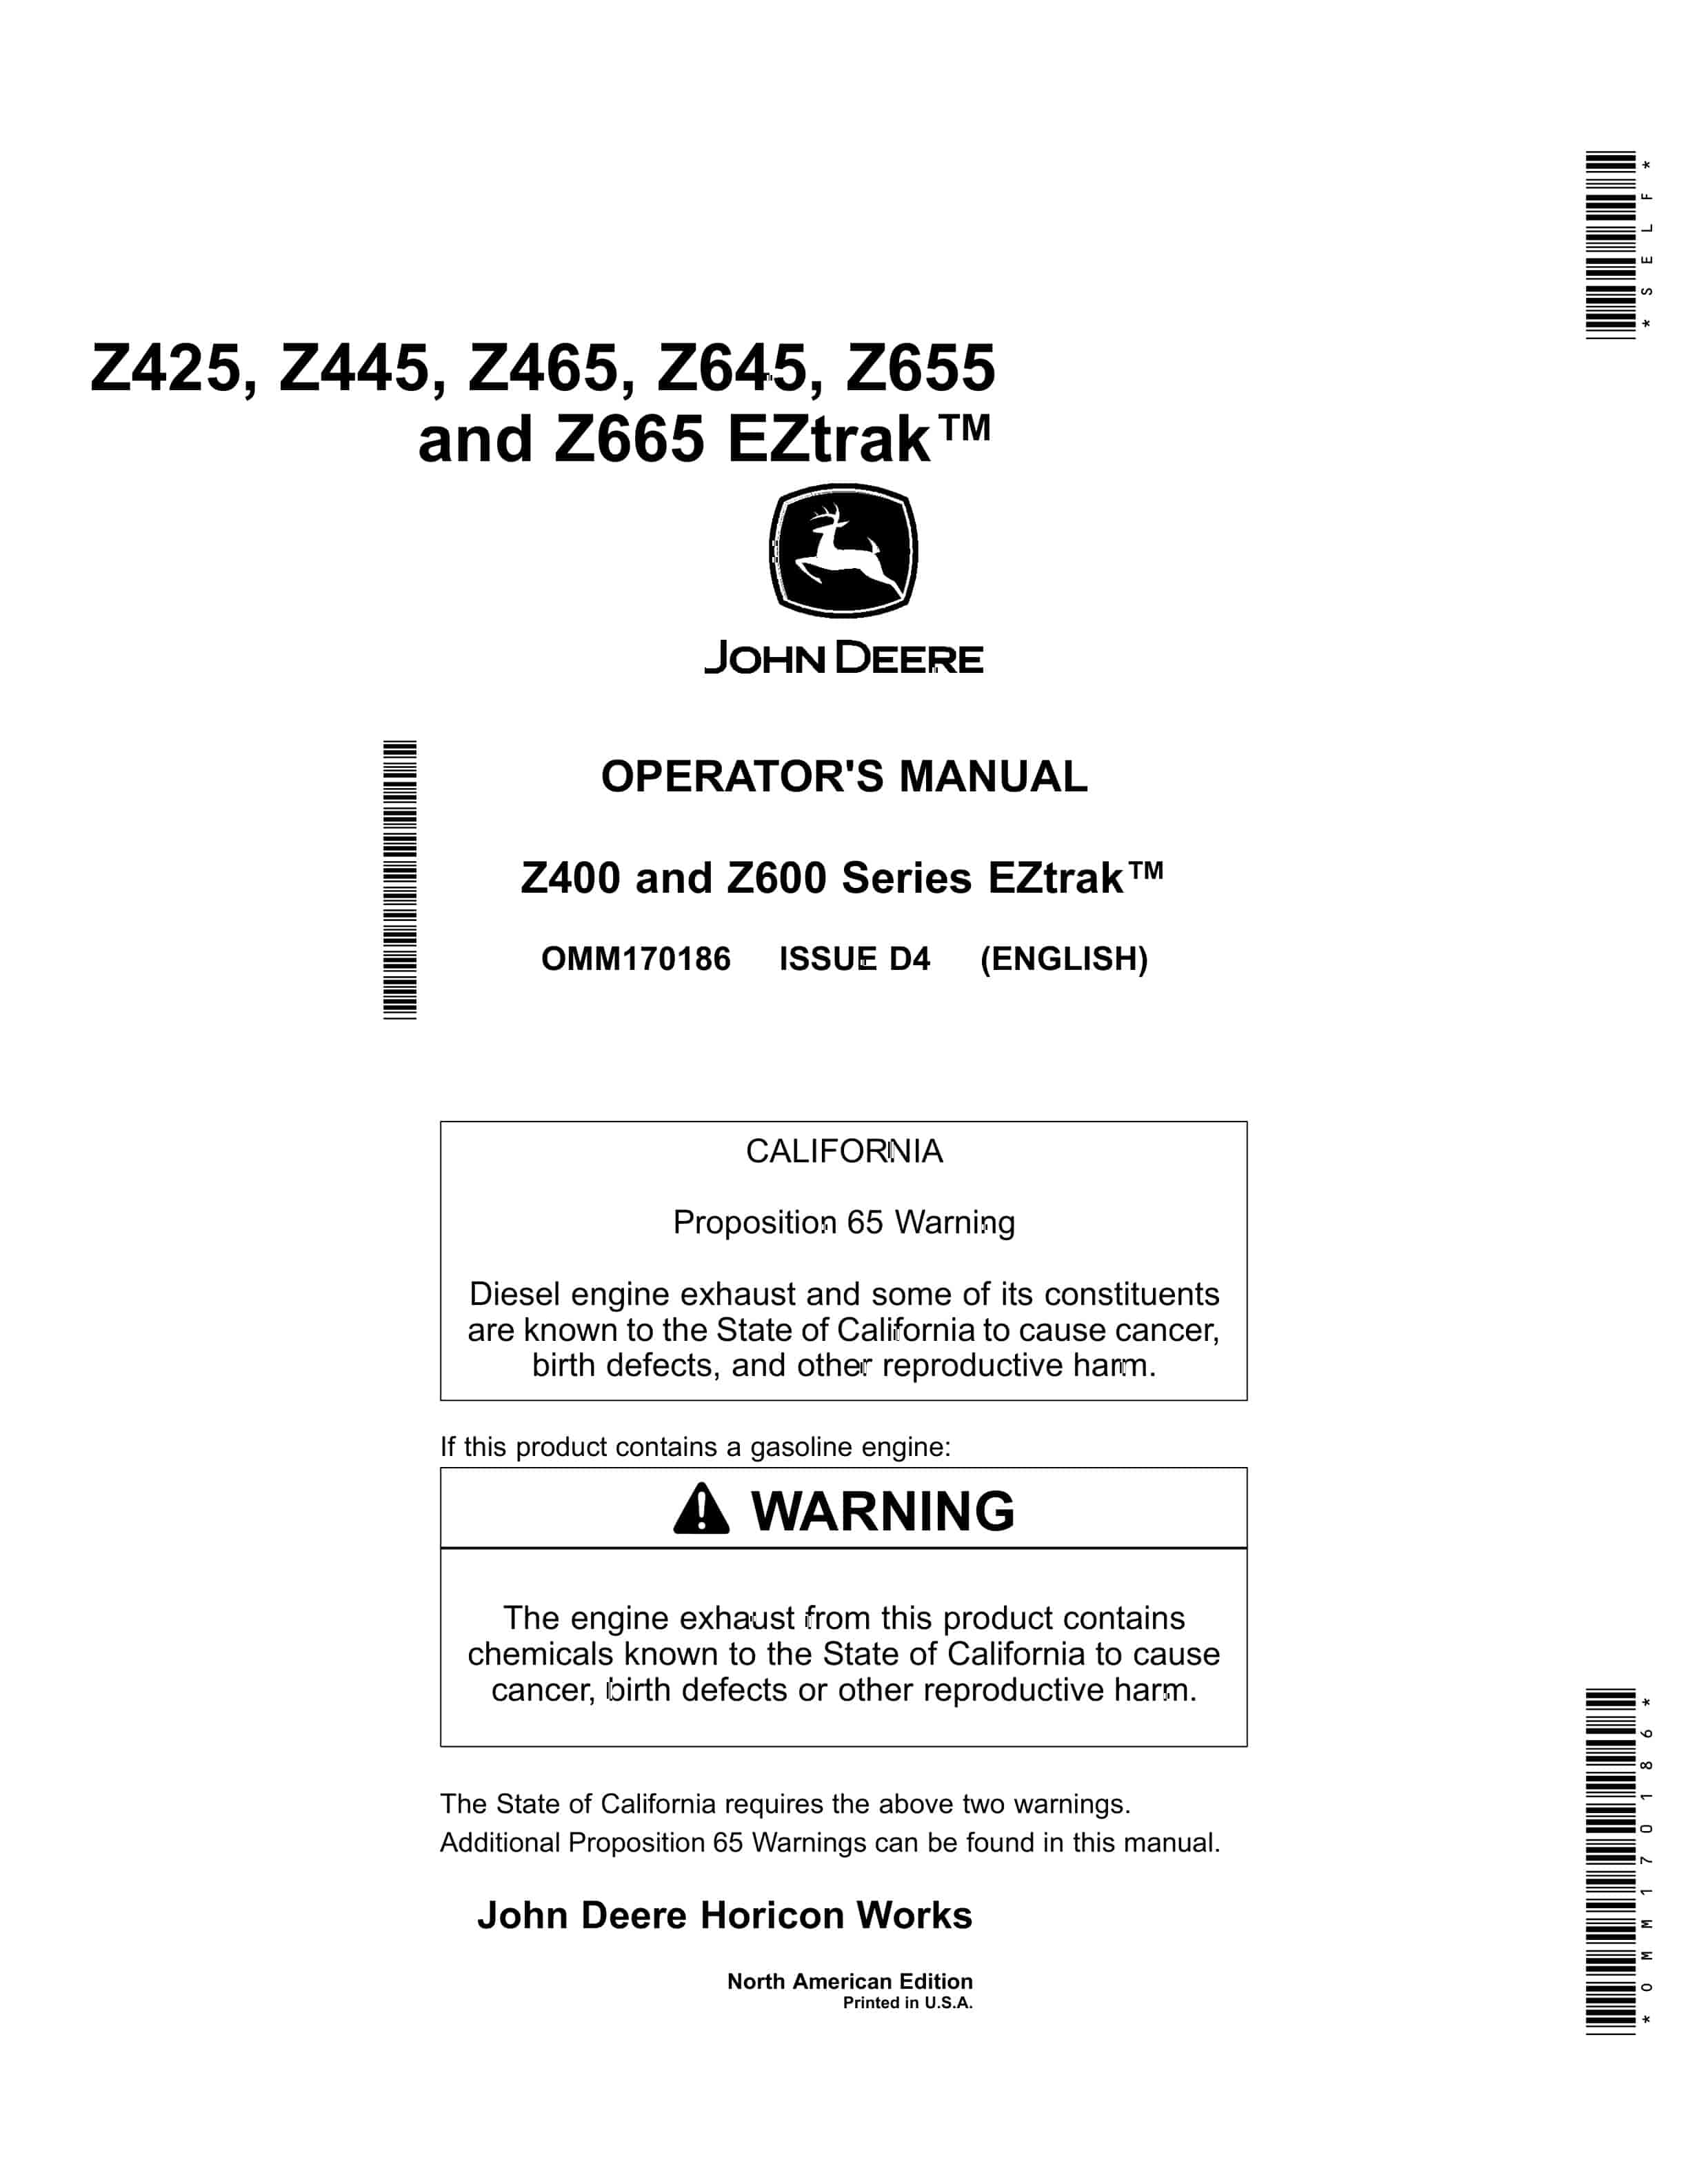 John Deere Z425 Z445 Z465 Z645 Z655 and Z665 EZtrak Operator Manual OMM170186 1